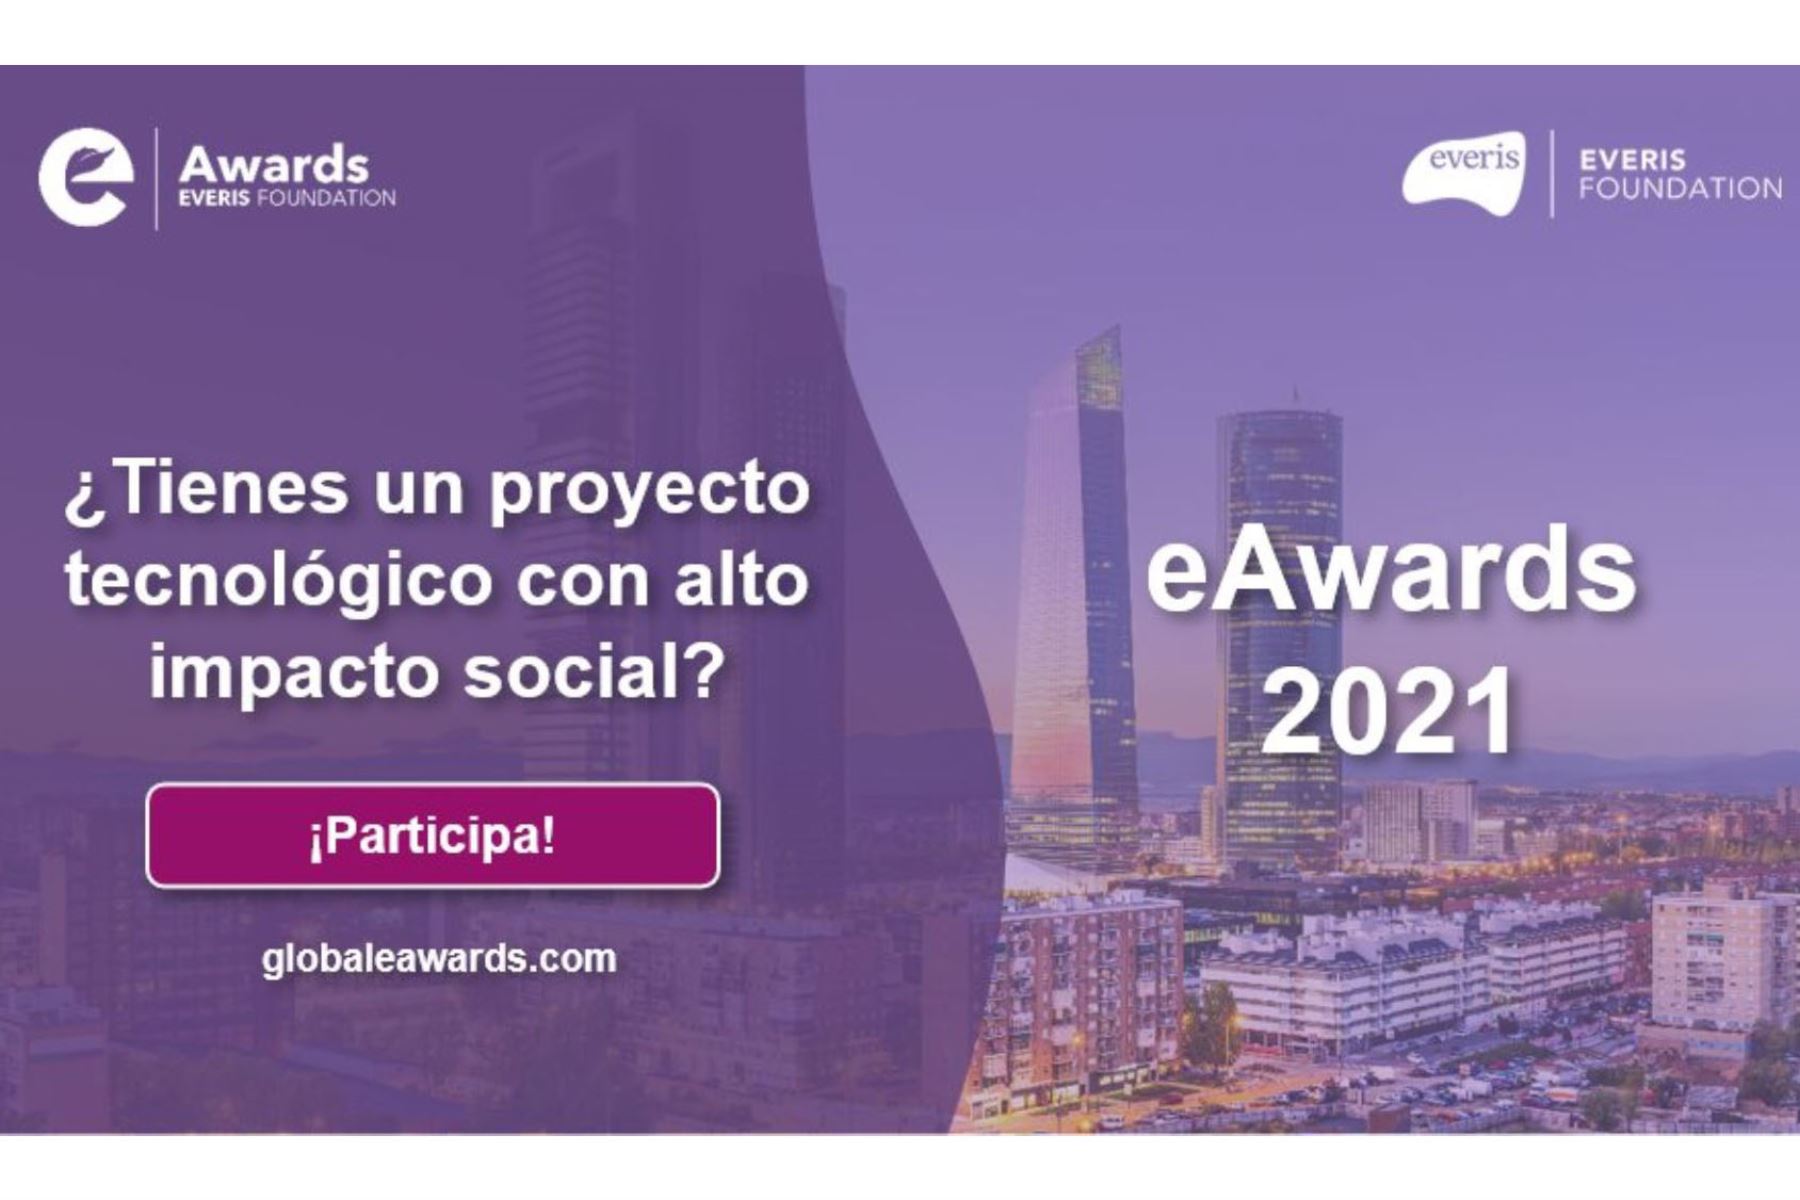 Fundación Everis busca al mejor proyecto emprendedor para que represente a Perú en la final internacional de los Global eAwards 2021.